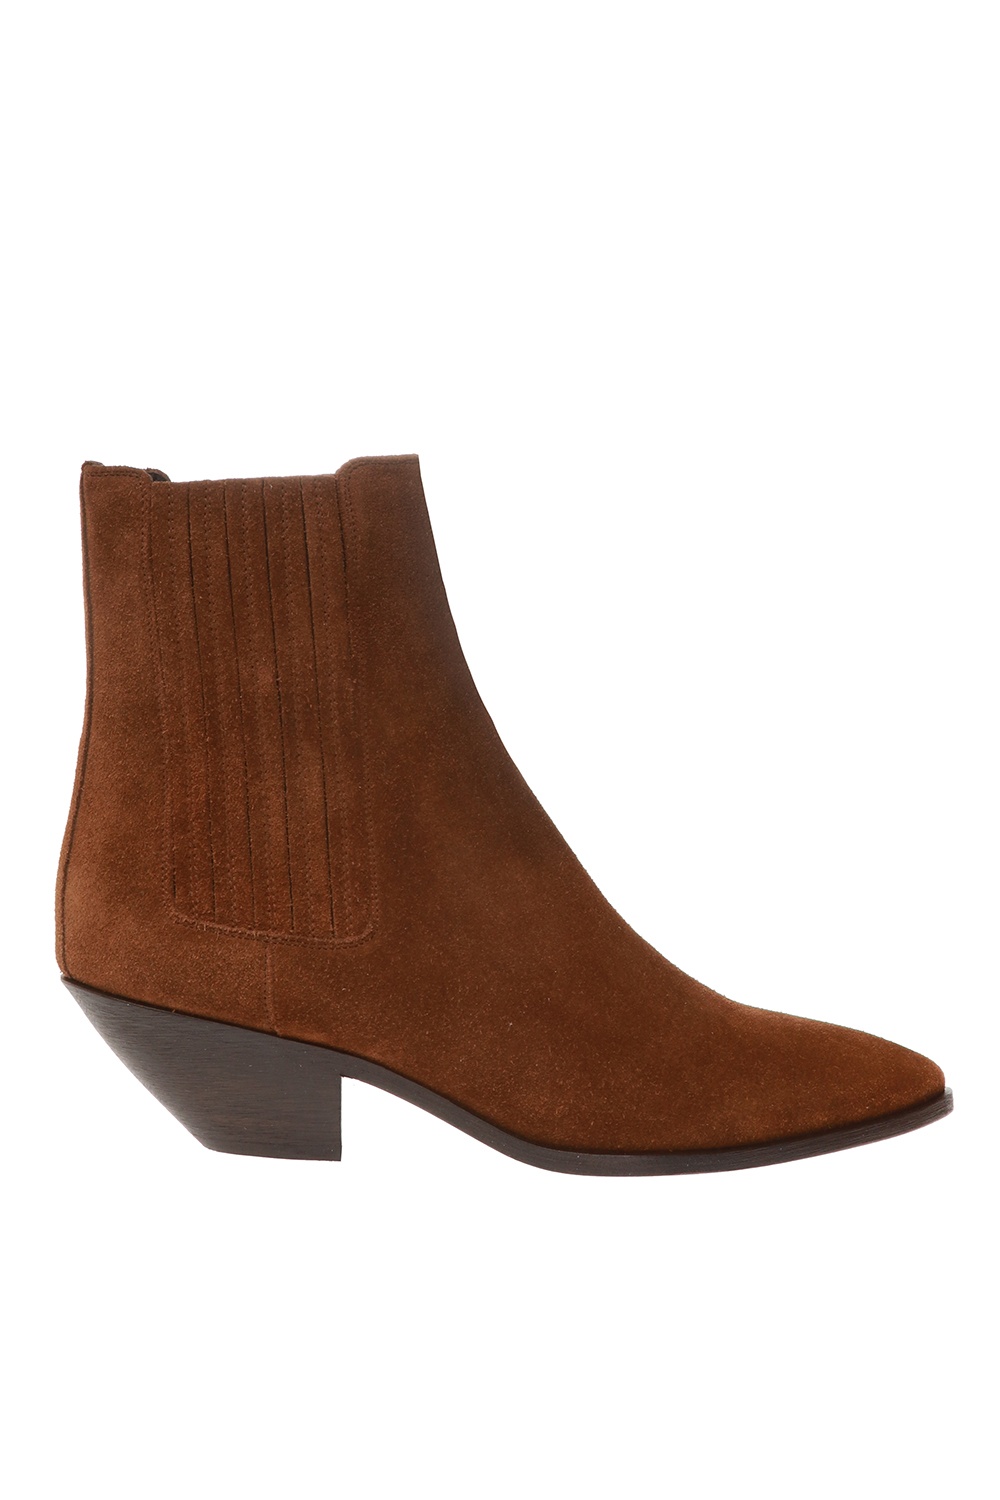 Saint Laurent 'West' heeled ankle boots | Women's Shoes | IetpShops